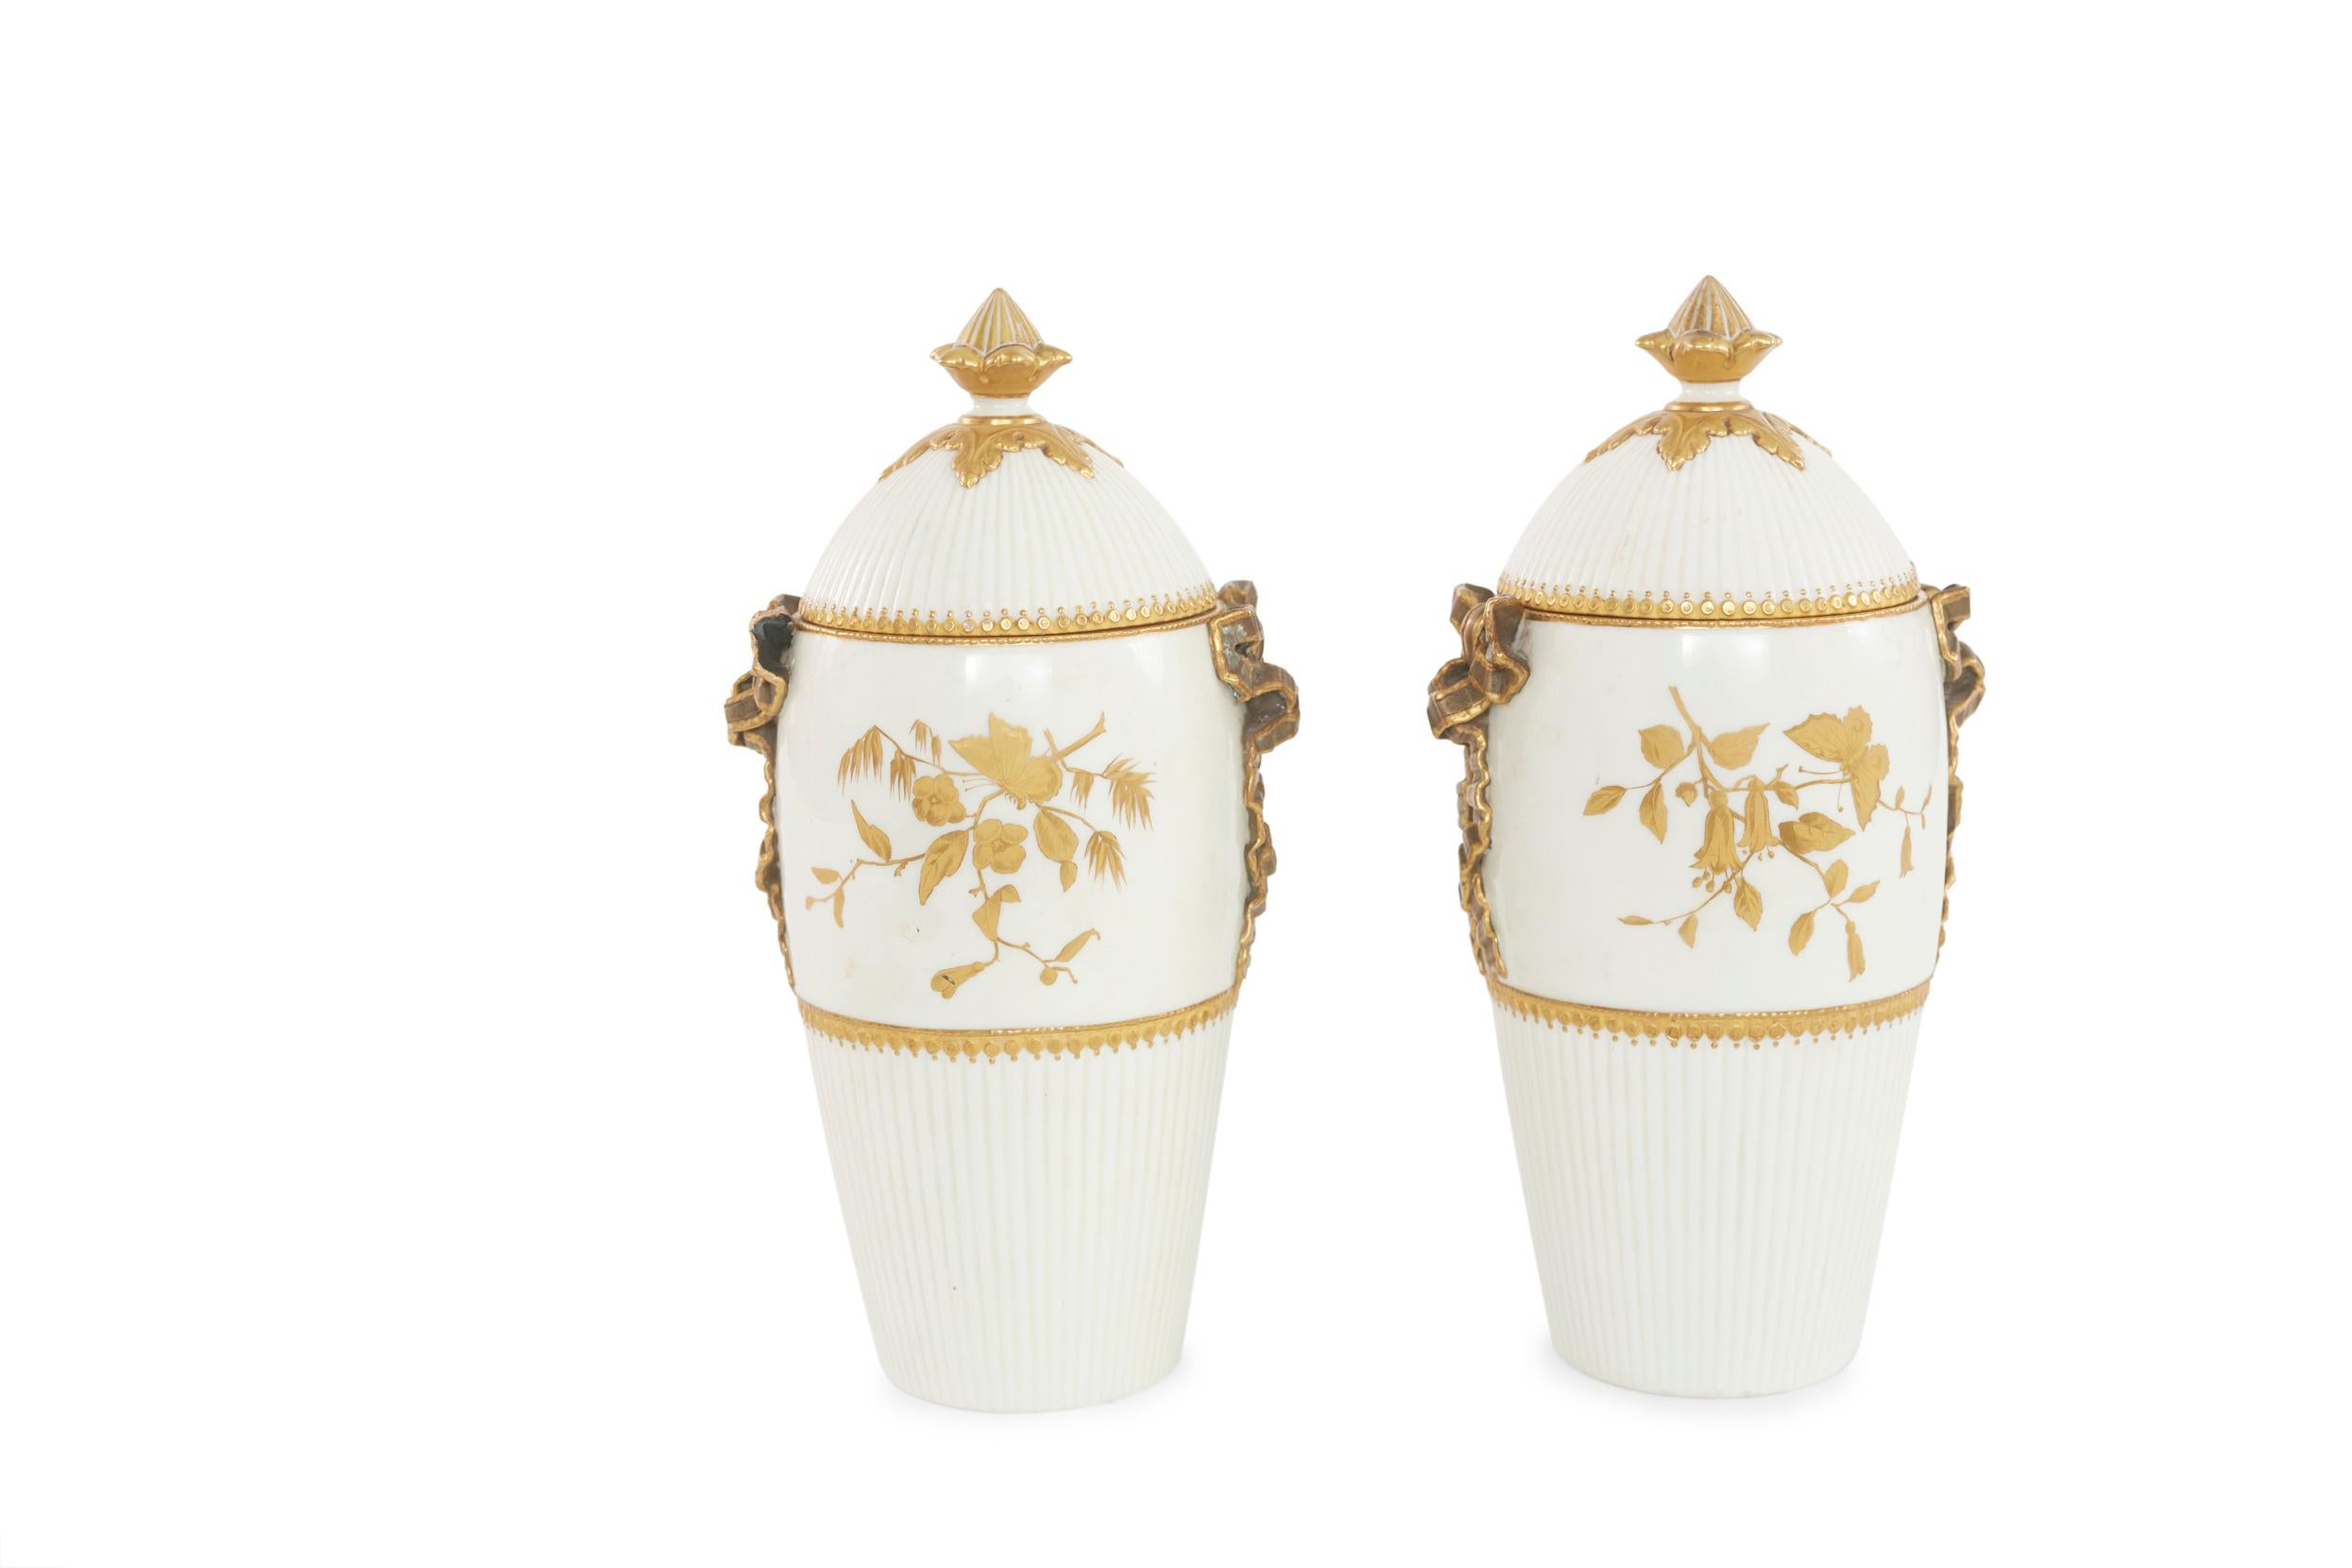 Paire d'urnes décoratives couvertes en porcelaine datant du milieu du 19e siècle, avec des détails floraux extérieurs dorés. Chaque urne est en excellent état. Usure mineure correspondant à l'âge et à l'utilisation. Signé avec une marque de bouclier